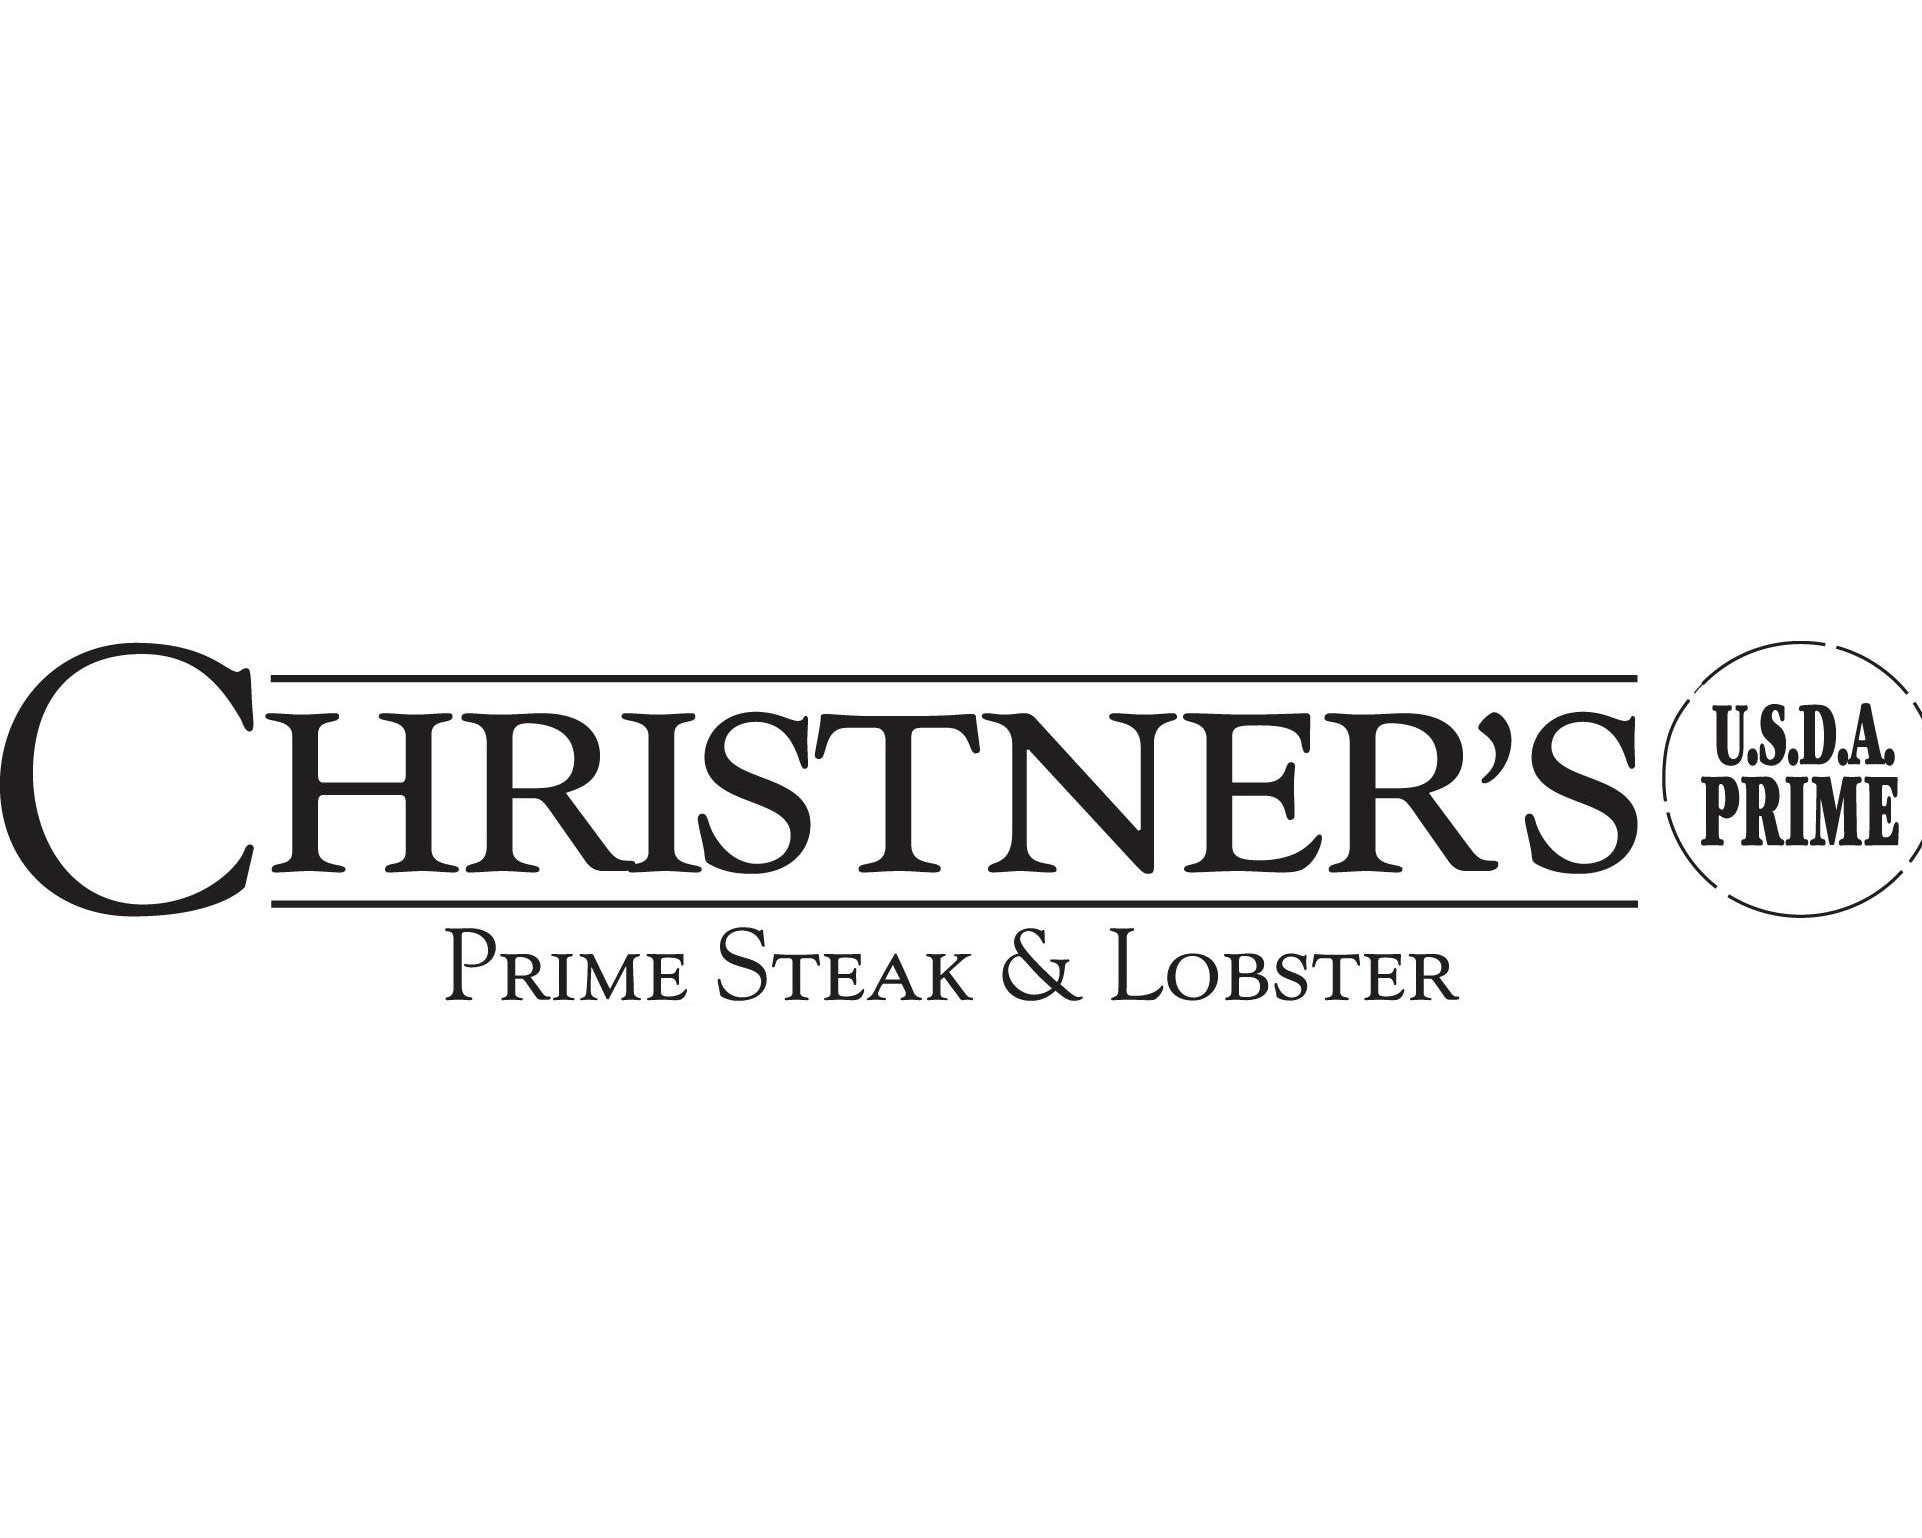 Christner's Prime Steak & Lobster_X2.jpg